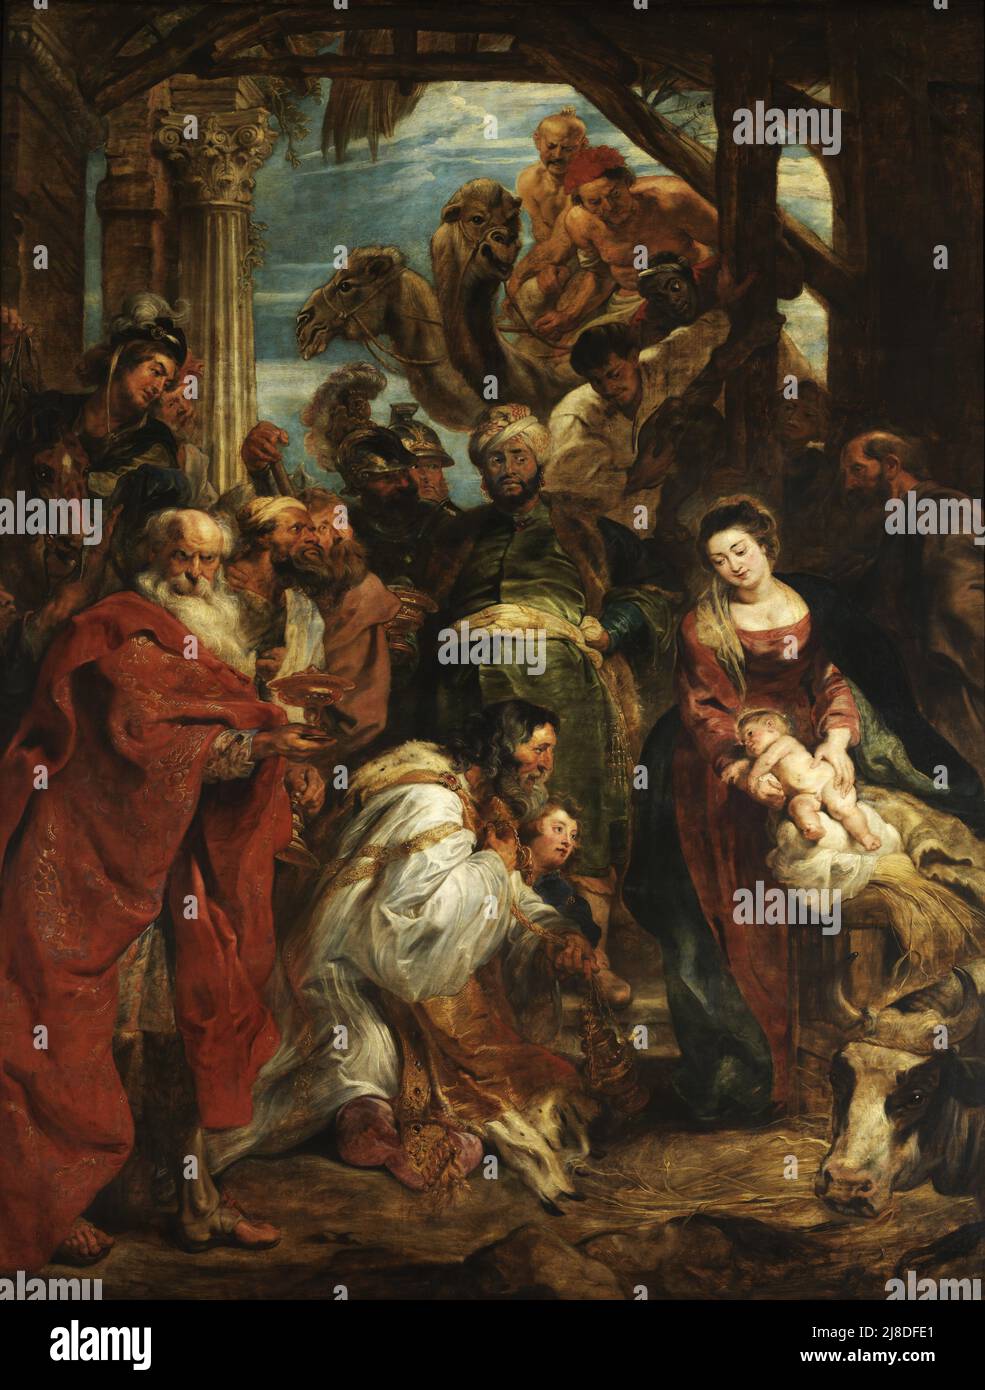 L'adoration du Magi par Rubens. Dans ce mythe chrétien, trois sages hommes ou rois viennent visiter le nouveau-né jésus et le reconnaissent comme le messie et fils de dieu. Banque D'Images